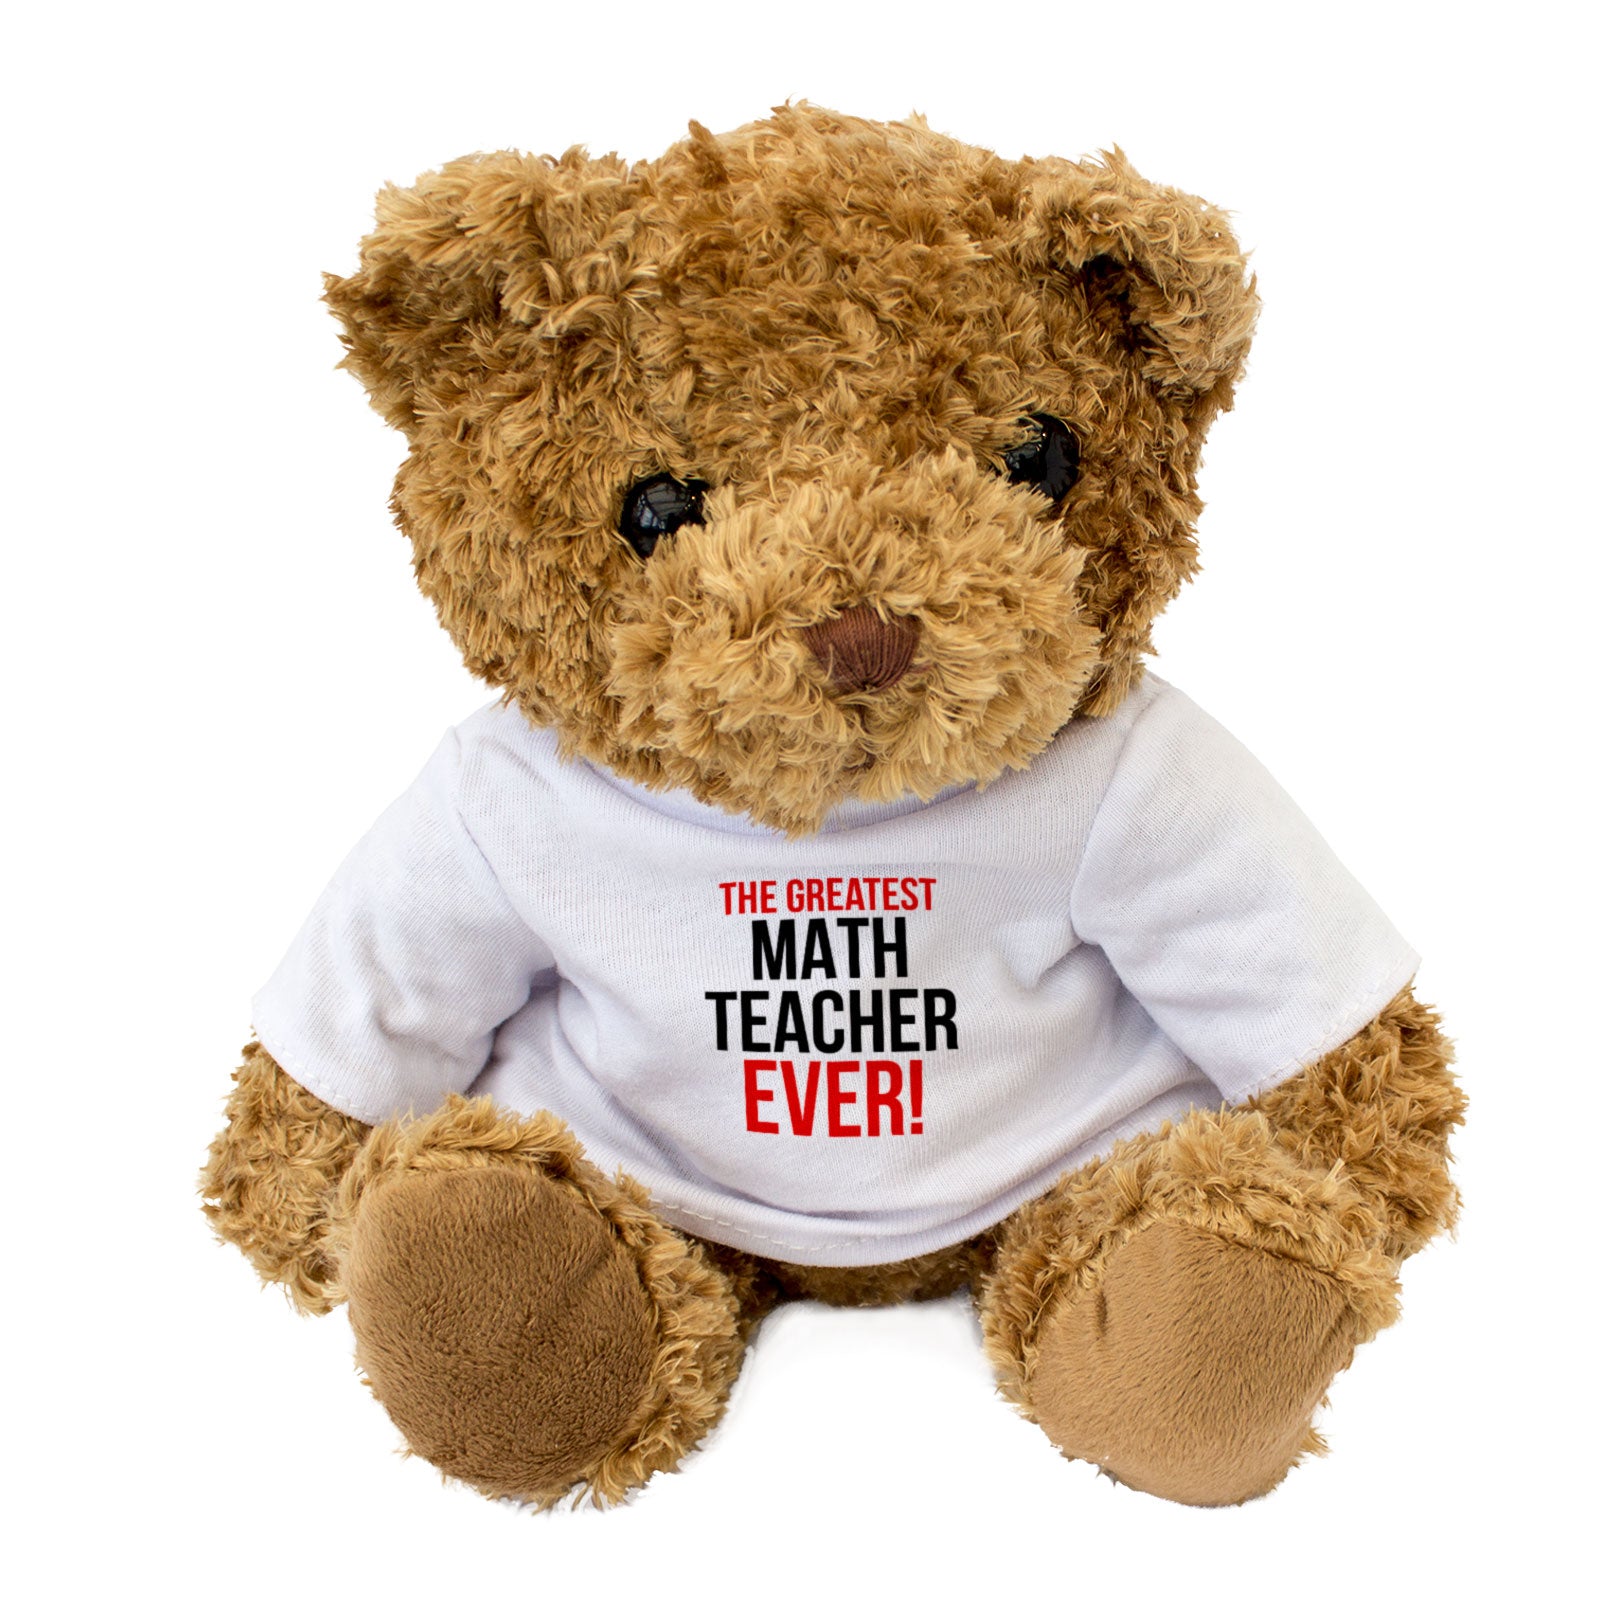 The Greatest Math Teacher Ever - Teddy Bear